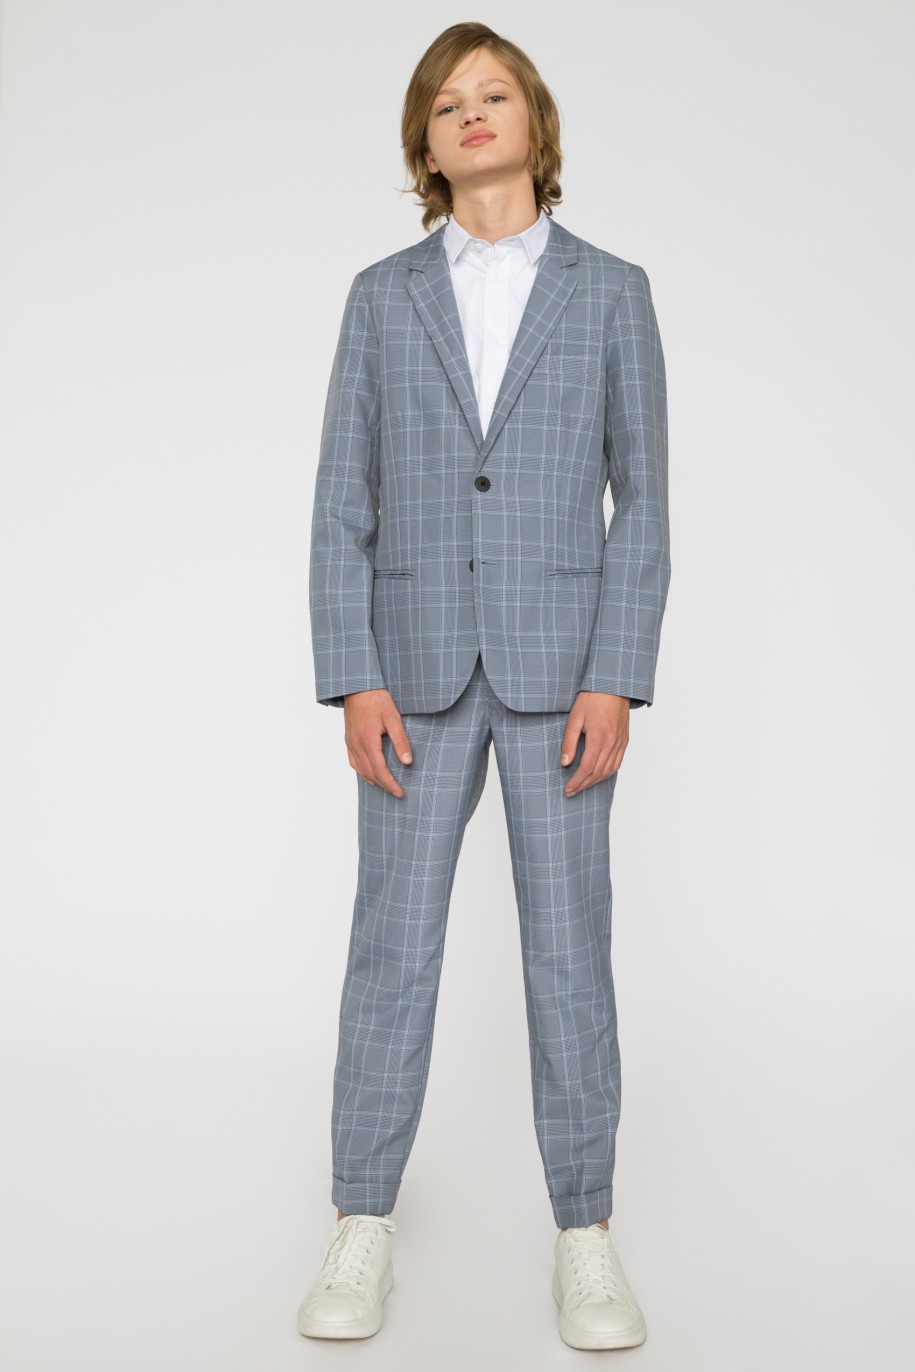 Eleganckie spodnie garniturowe w kratę dla chłopaka - 33589